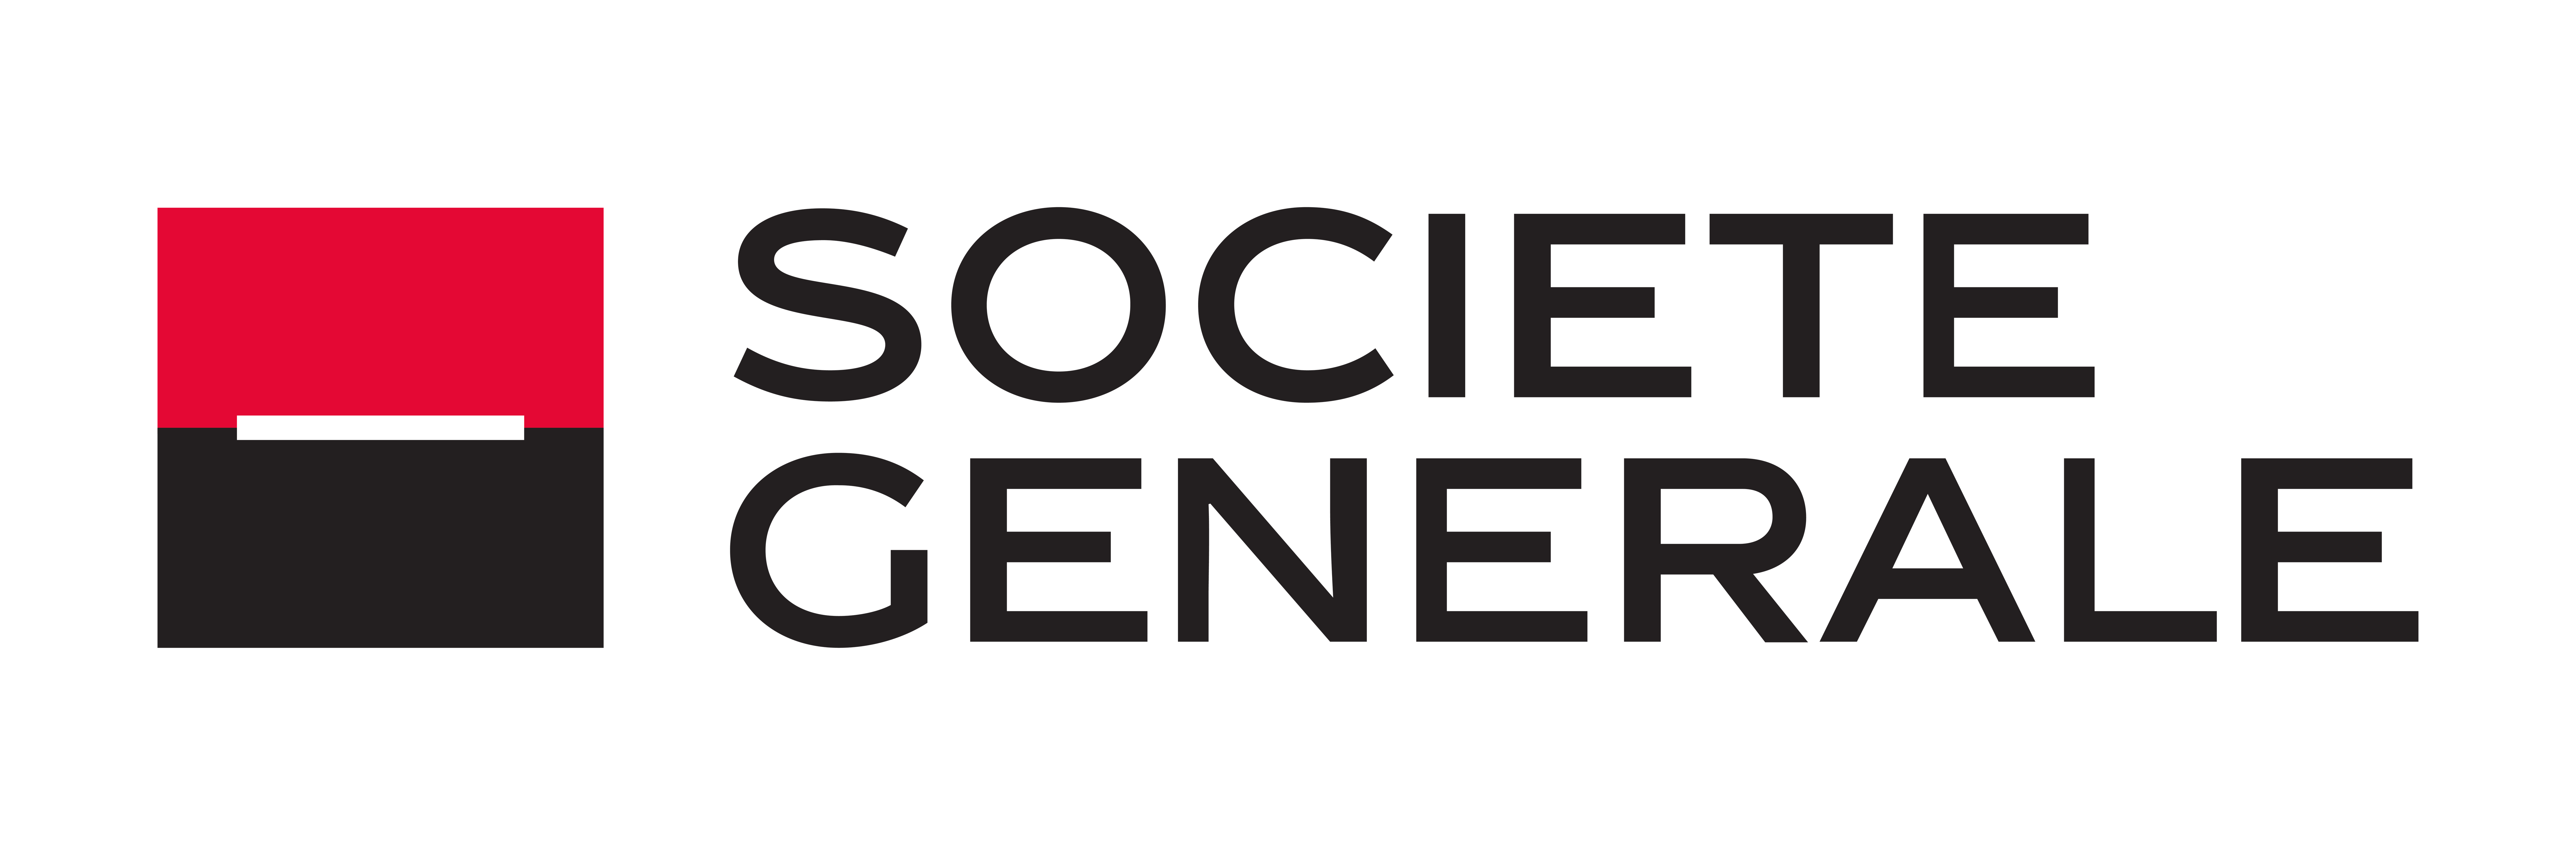 logo societé générale